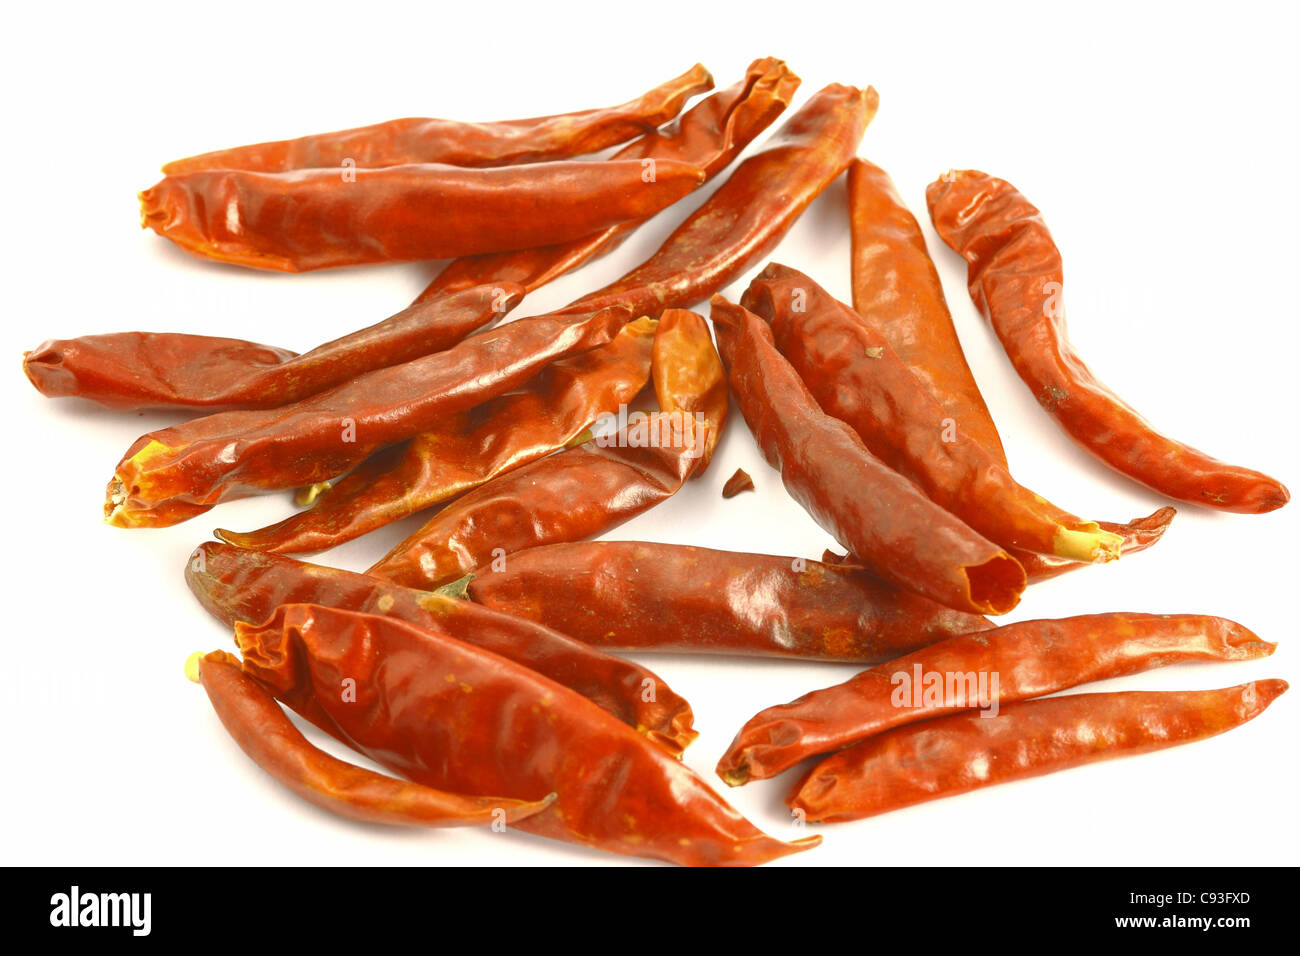 Spice Chili auf dem weißen Hintergrund Stockfoto